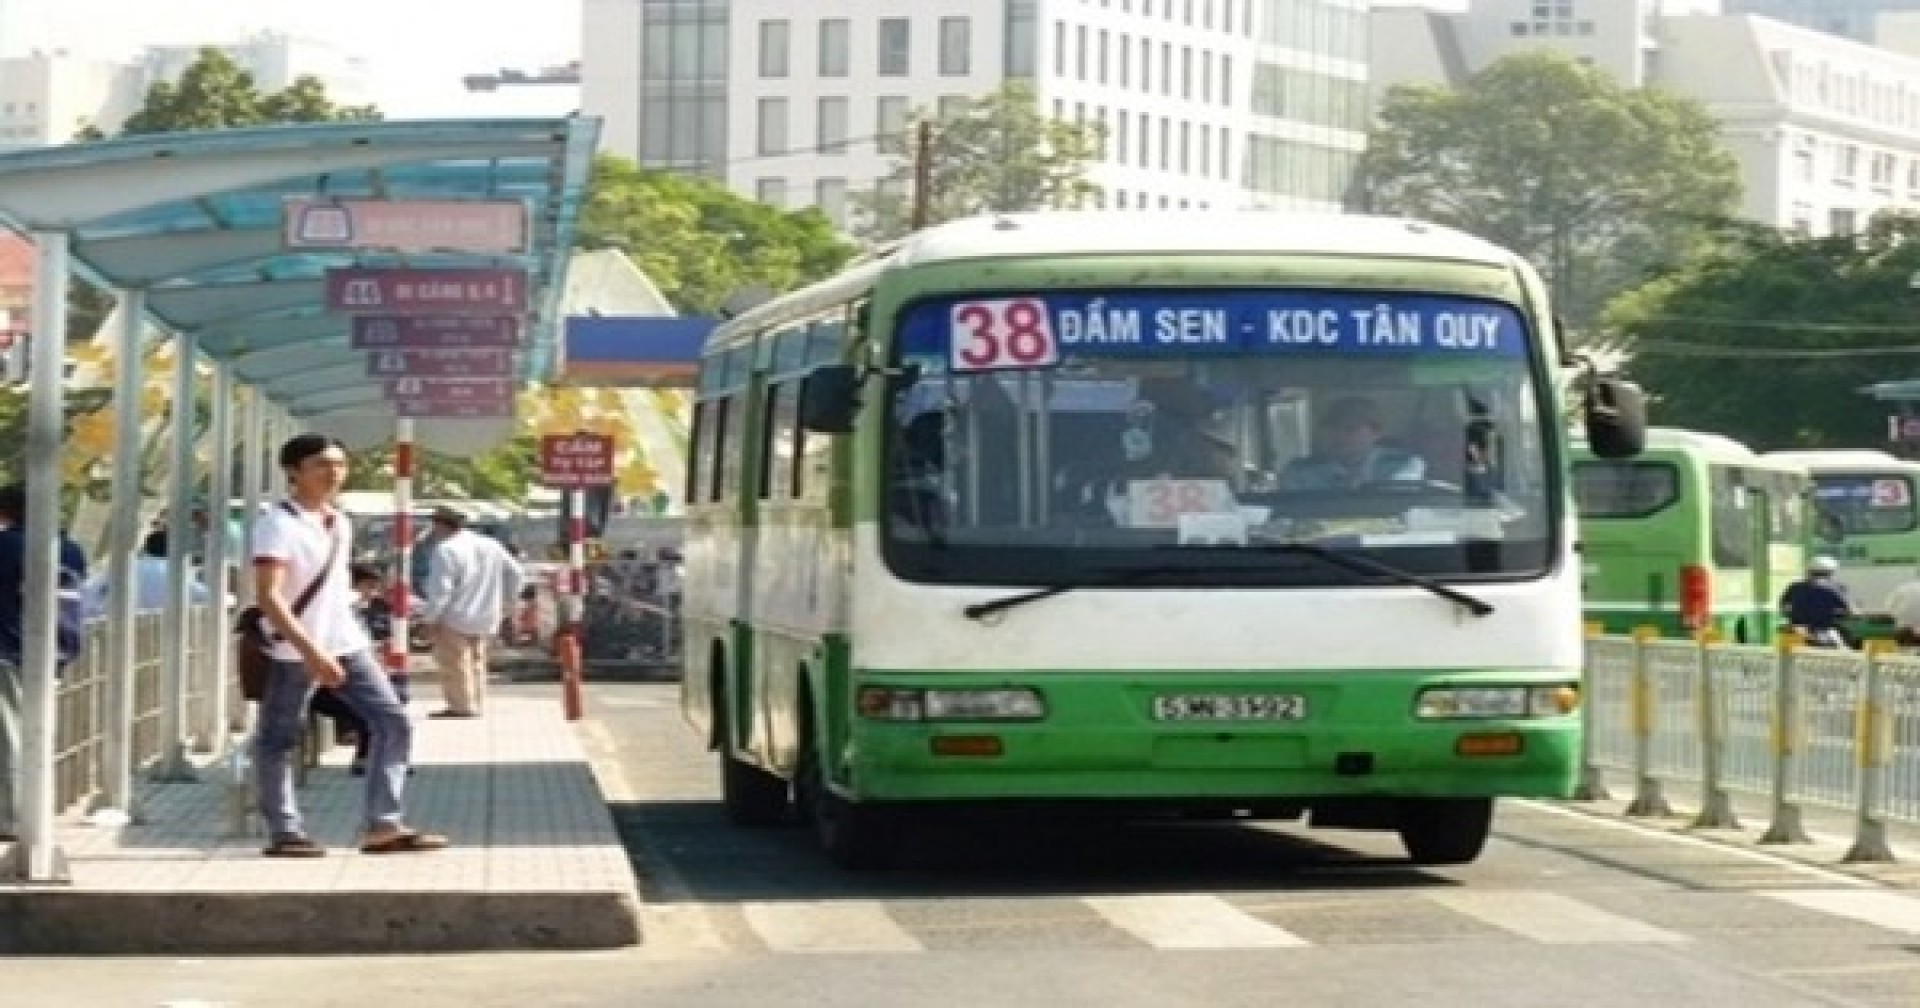 5 tiện ích của xe bus dành cho cộng đồng